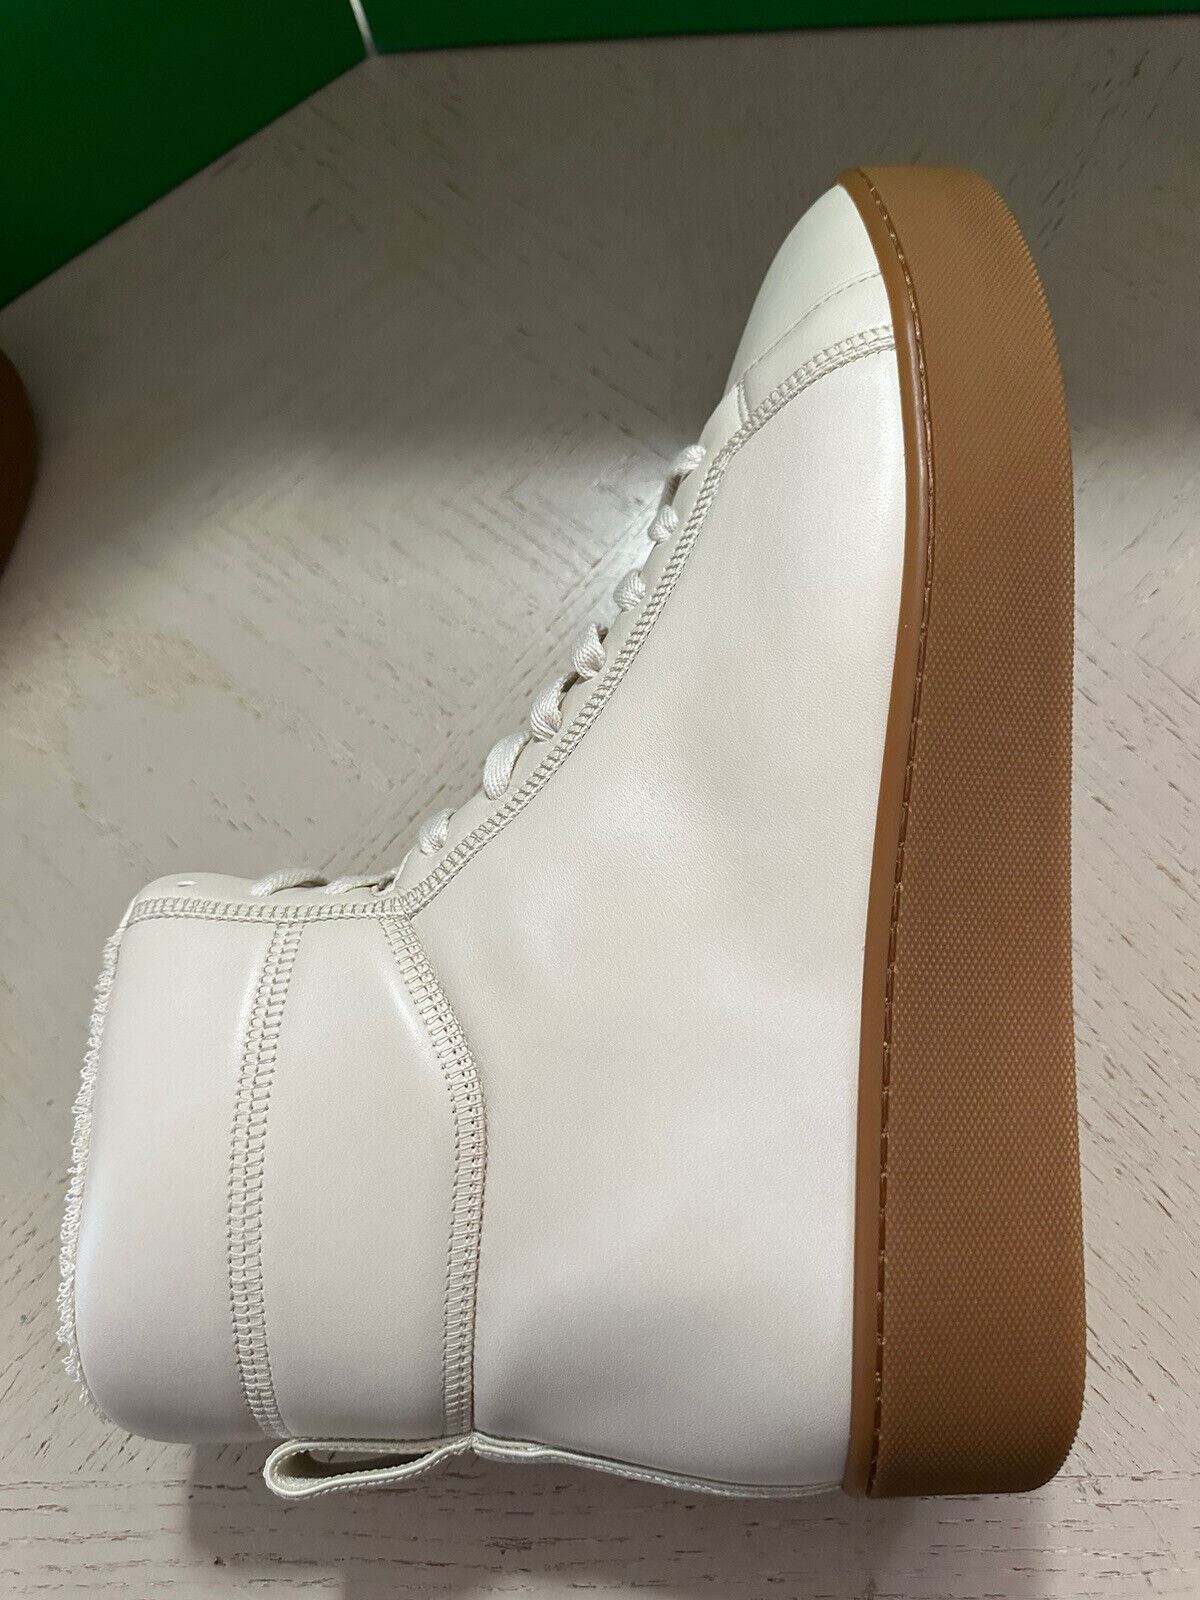 NIB $950 Bottega Veneta Мужские кожаные высокие кроссовки белые 9 US/42 EU